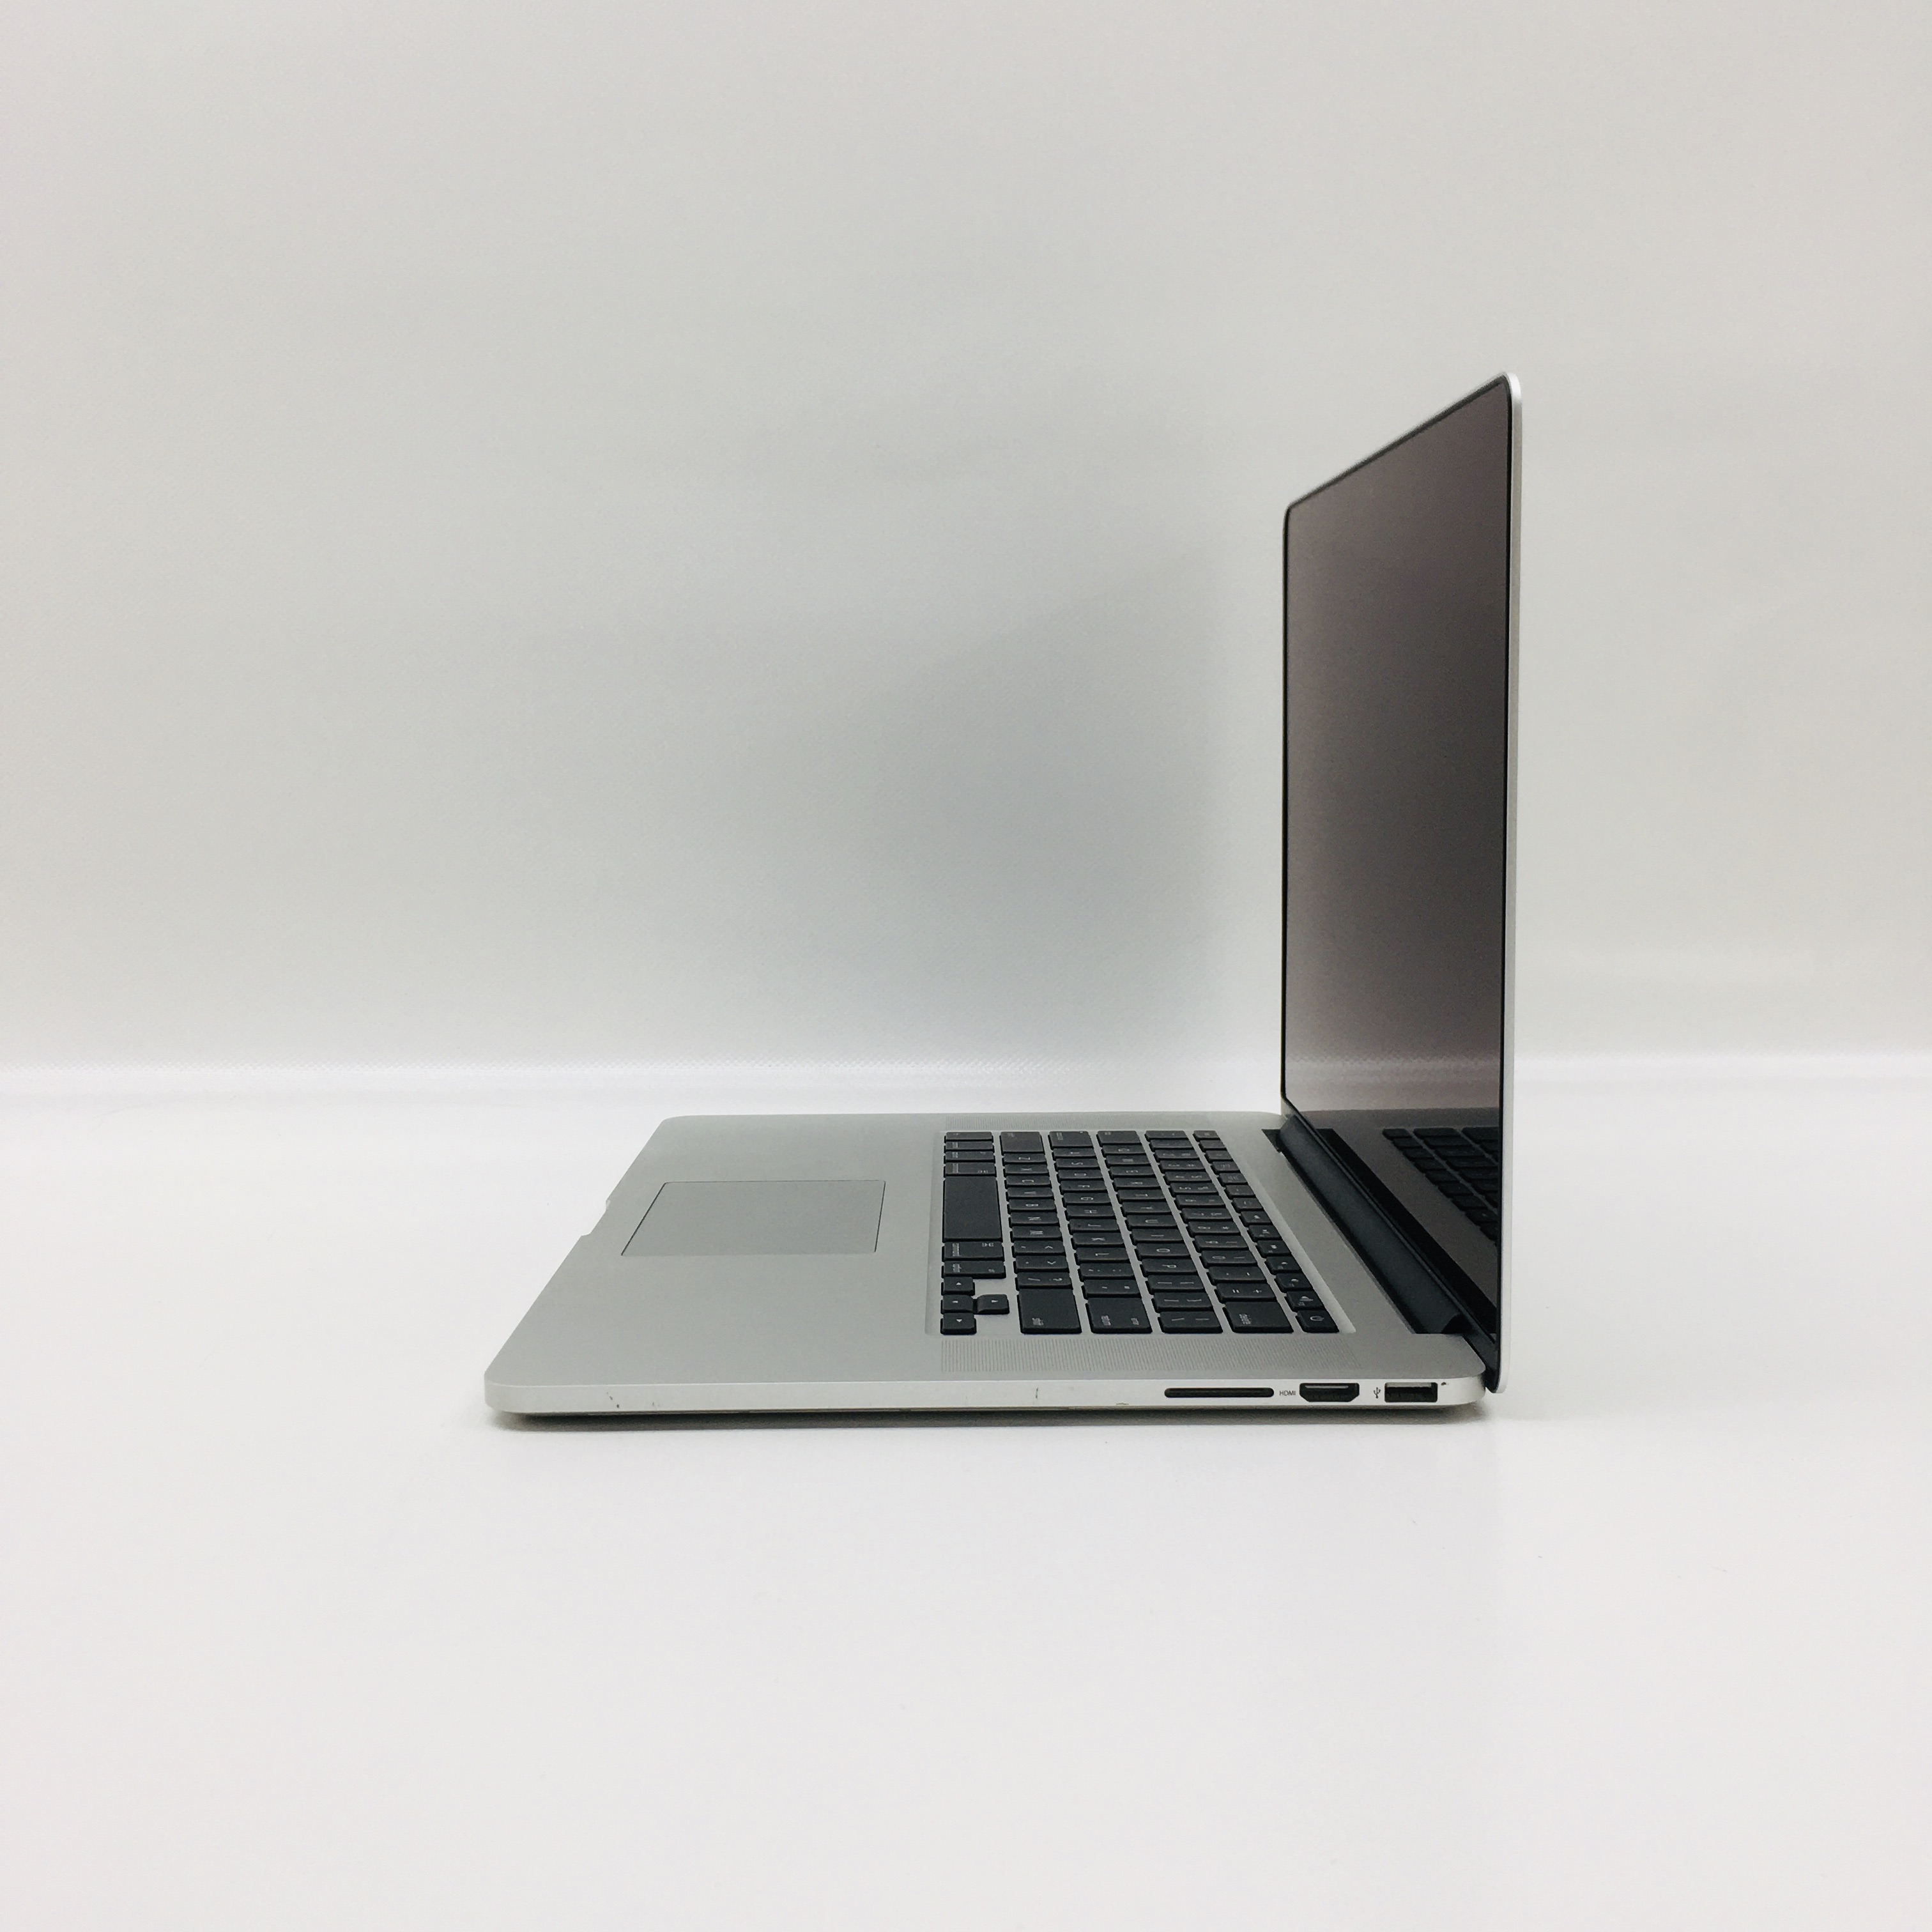 MacBook Pro Retina 15" Mid 2015 (Intel Quad-Core i7 2.5 GHz 16 GB RAM 512 GB SSD), Intel Quad-Core i7 2.5 GHz, 16 GB RAM, 512 GB SSD, image 3